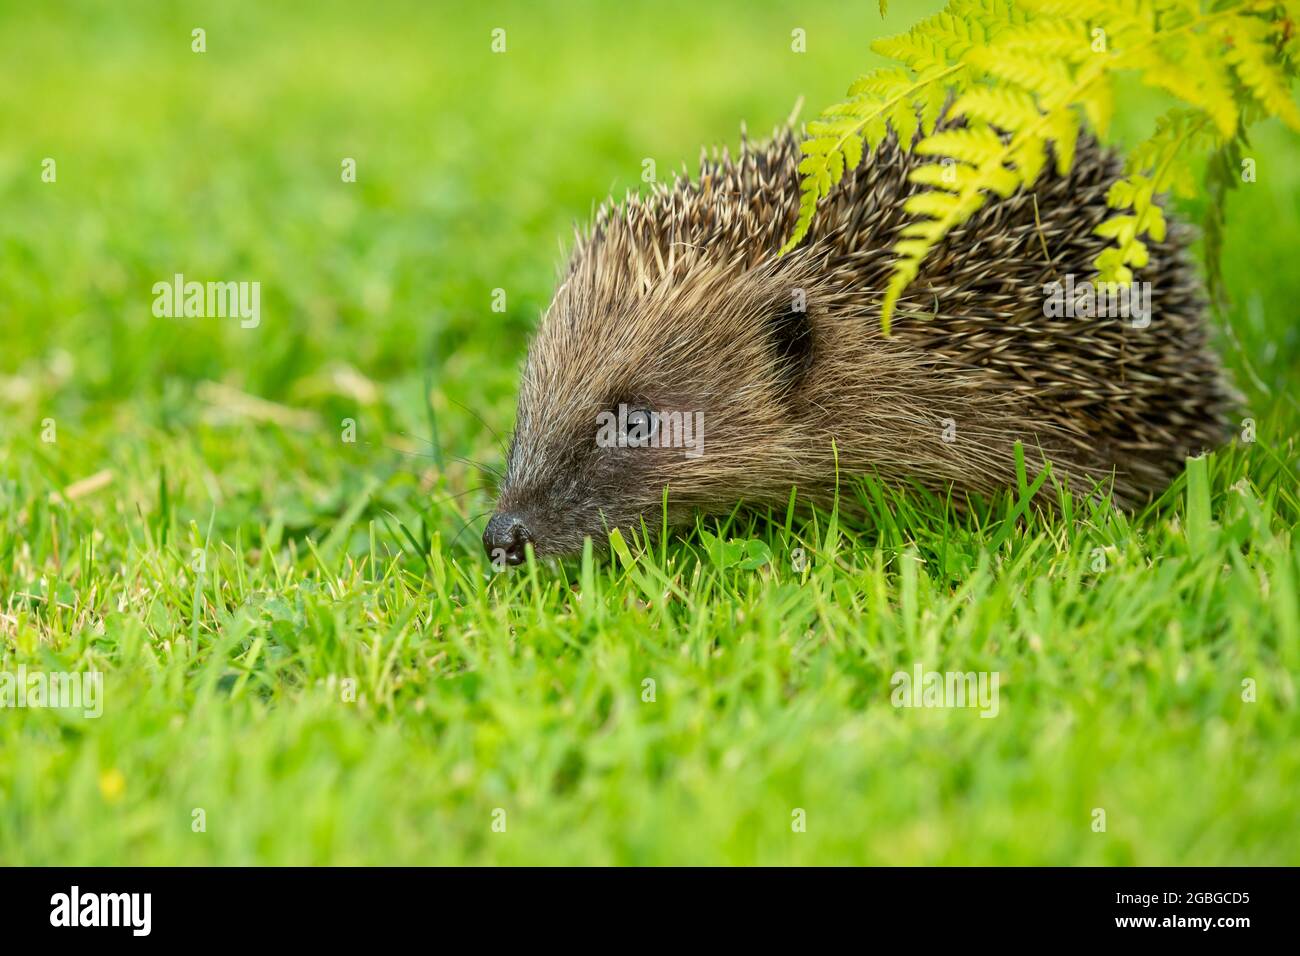 Hedgehog, nome scientifico: Erinaceus Europaeus. Riccio selvatico, nativo, europeo in habitat naturale con prato verde e felci. Verso le Foto Stock